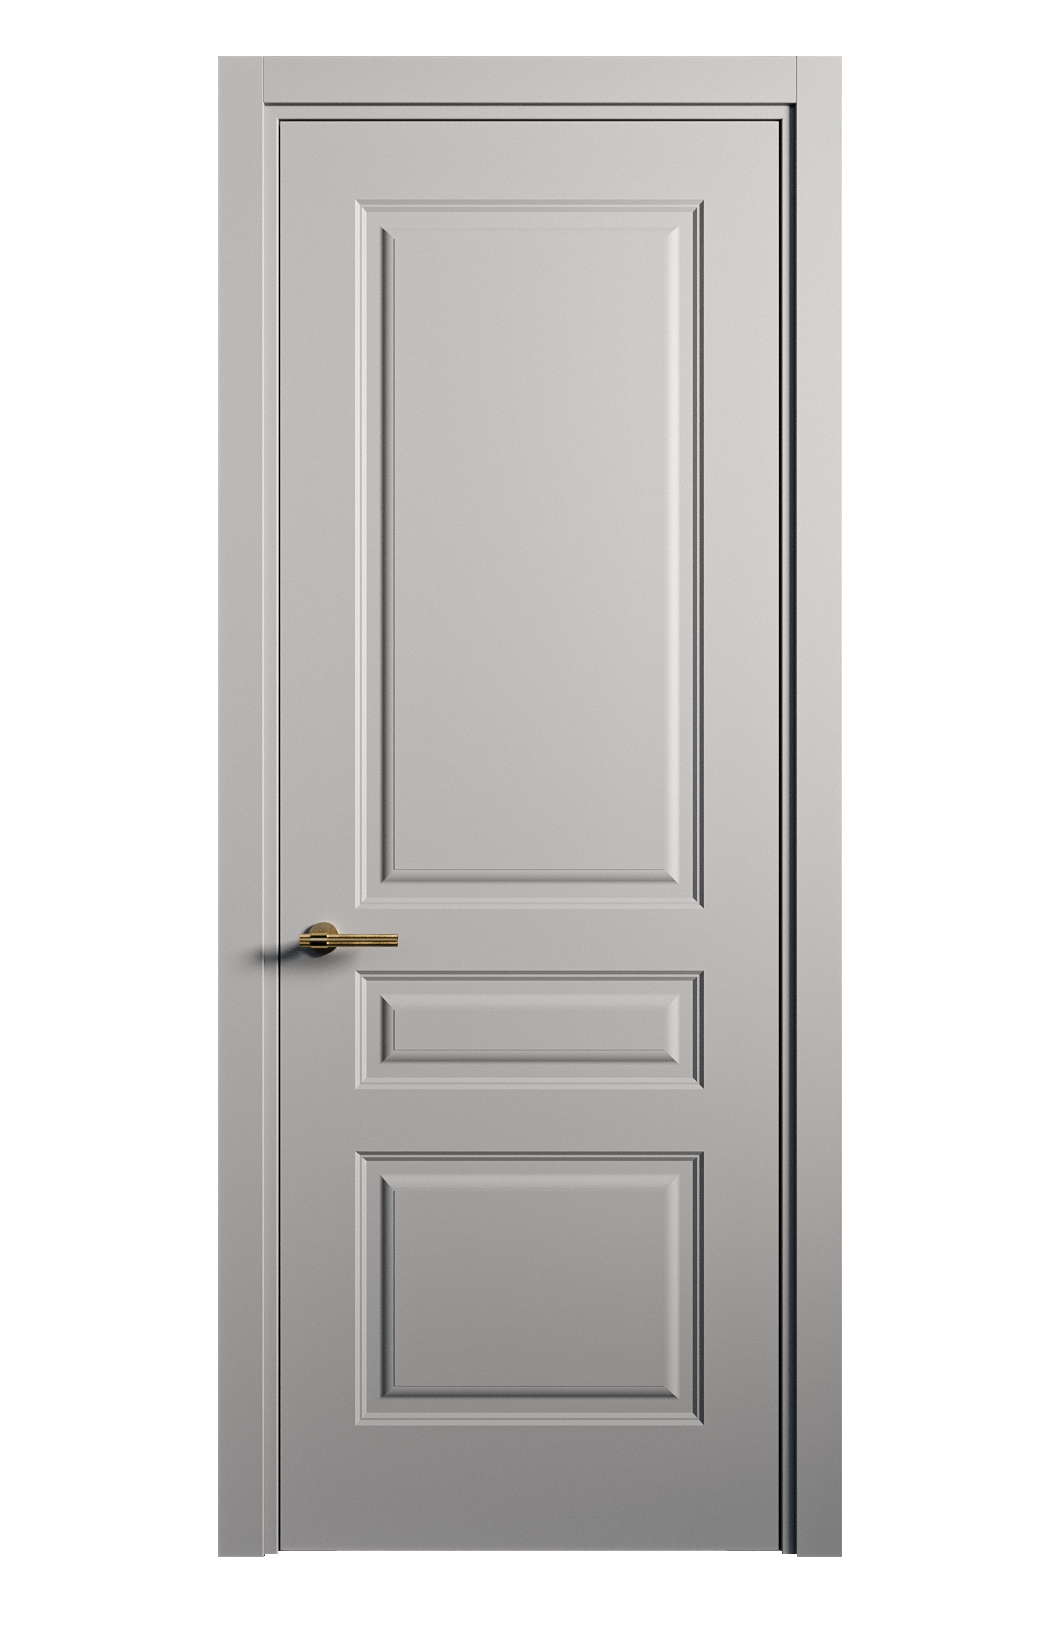 Межкомнатная дверь Вита-2 глухая эмаль ral 7040 26330